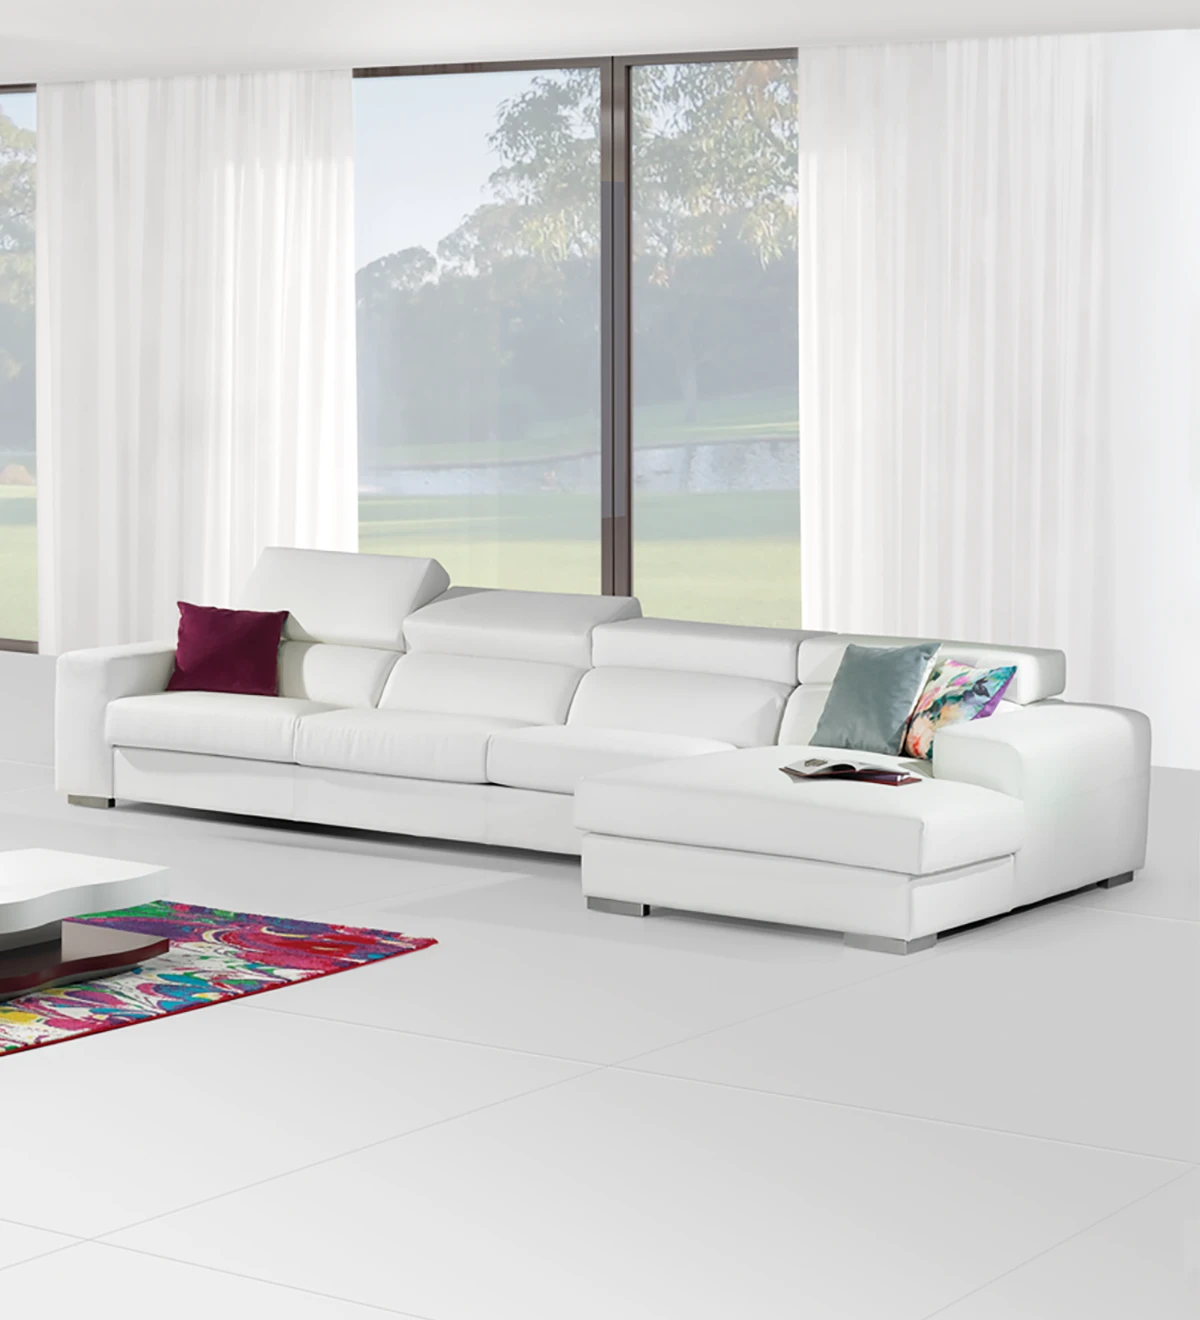 Sofá de 3 plazas con chaise longue, tapizado en ecopiel blanca, con reposacabezas reclinables.